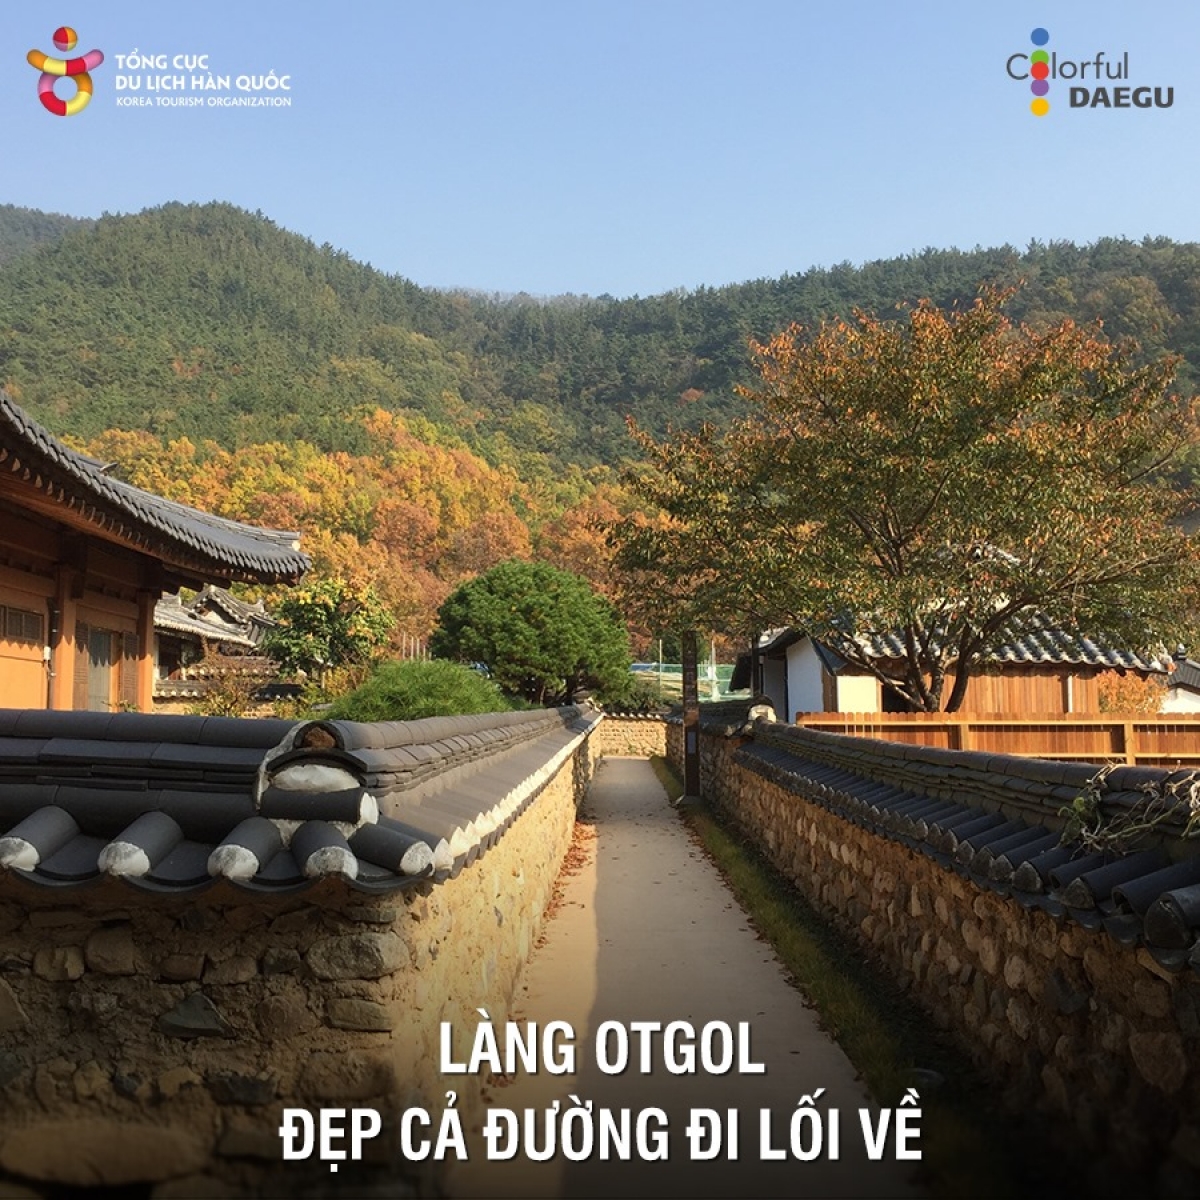 Tại Daegu, làng Otgol là địa điểm tuyệt vời để trải nghiệm cảm giác sống trong những ngôi nhà truyền thống Hanok